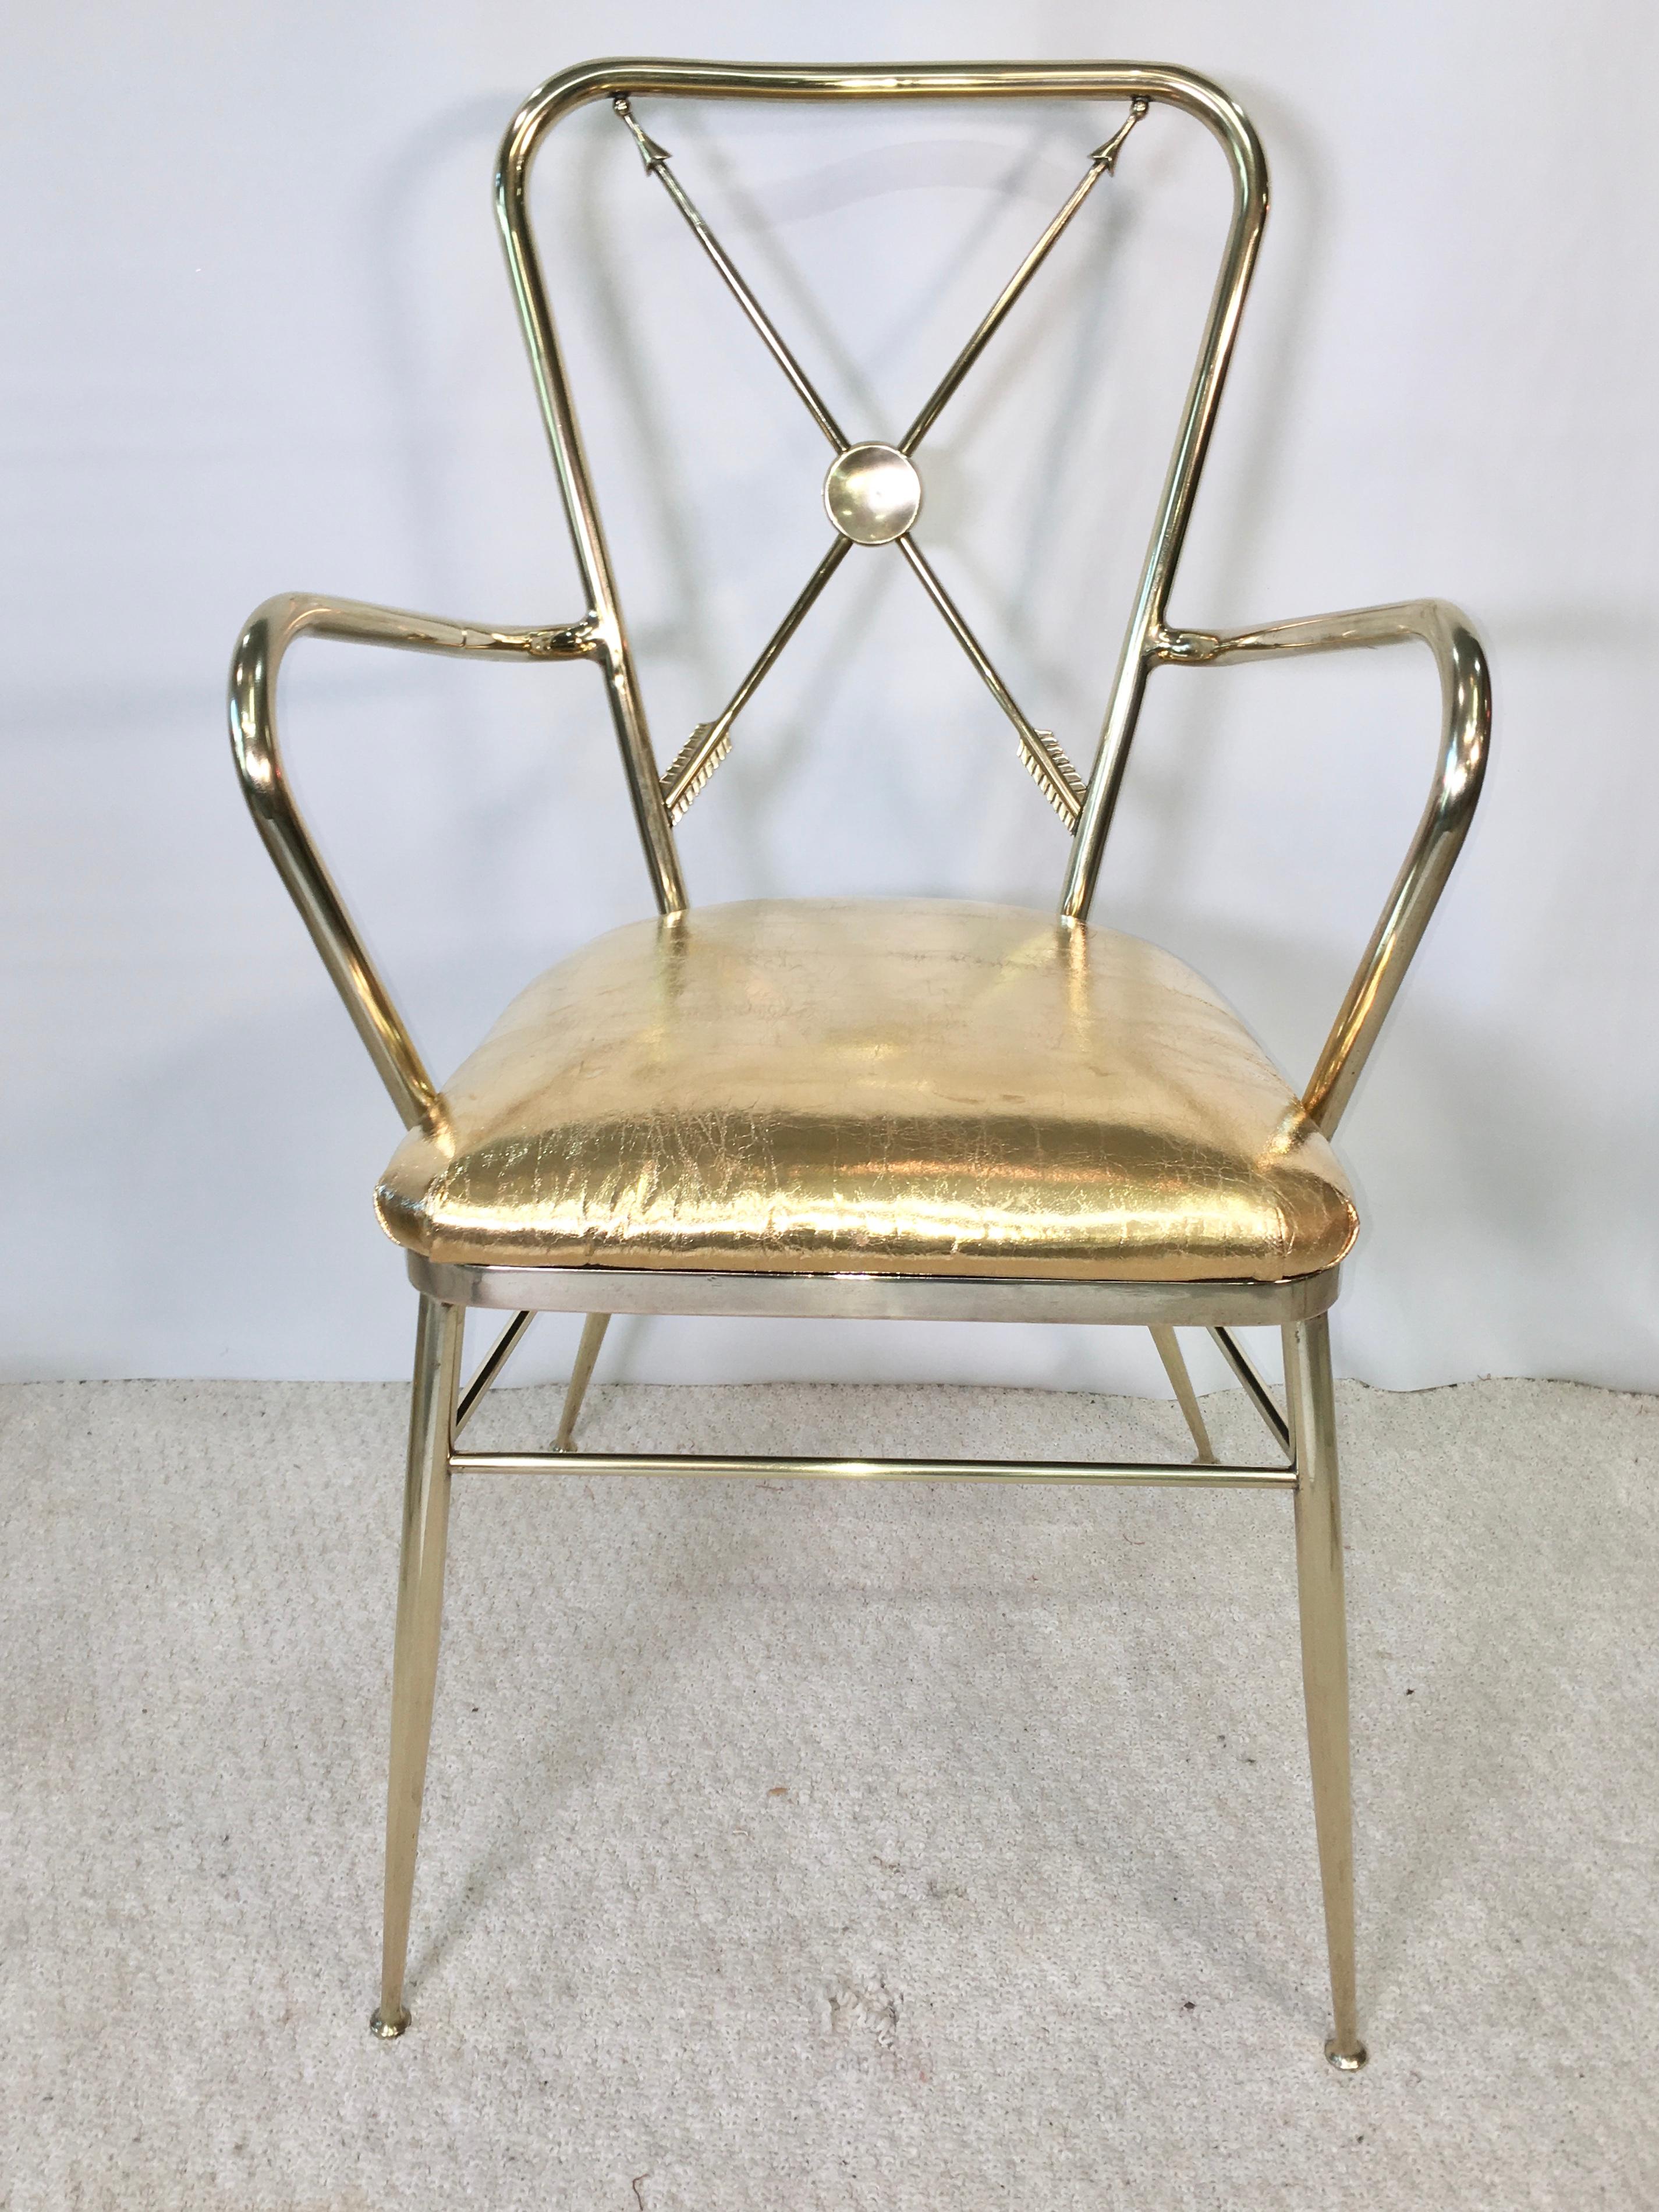 fauteuil Chiavari italien des années 1950 en laiton avec motif de flèches croisées dans le style de Gio Ponti, Tomaso Buzzi et Marc du Plantier.
Coussin d'assise nouvellement rembourré en cuir métallique or vintage. Polis à la main pour obtenir une